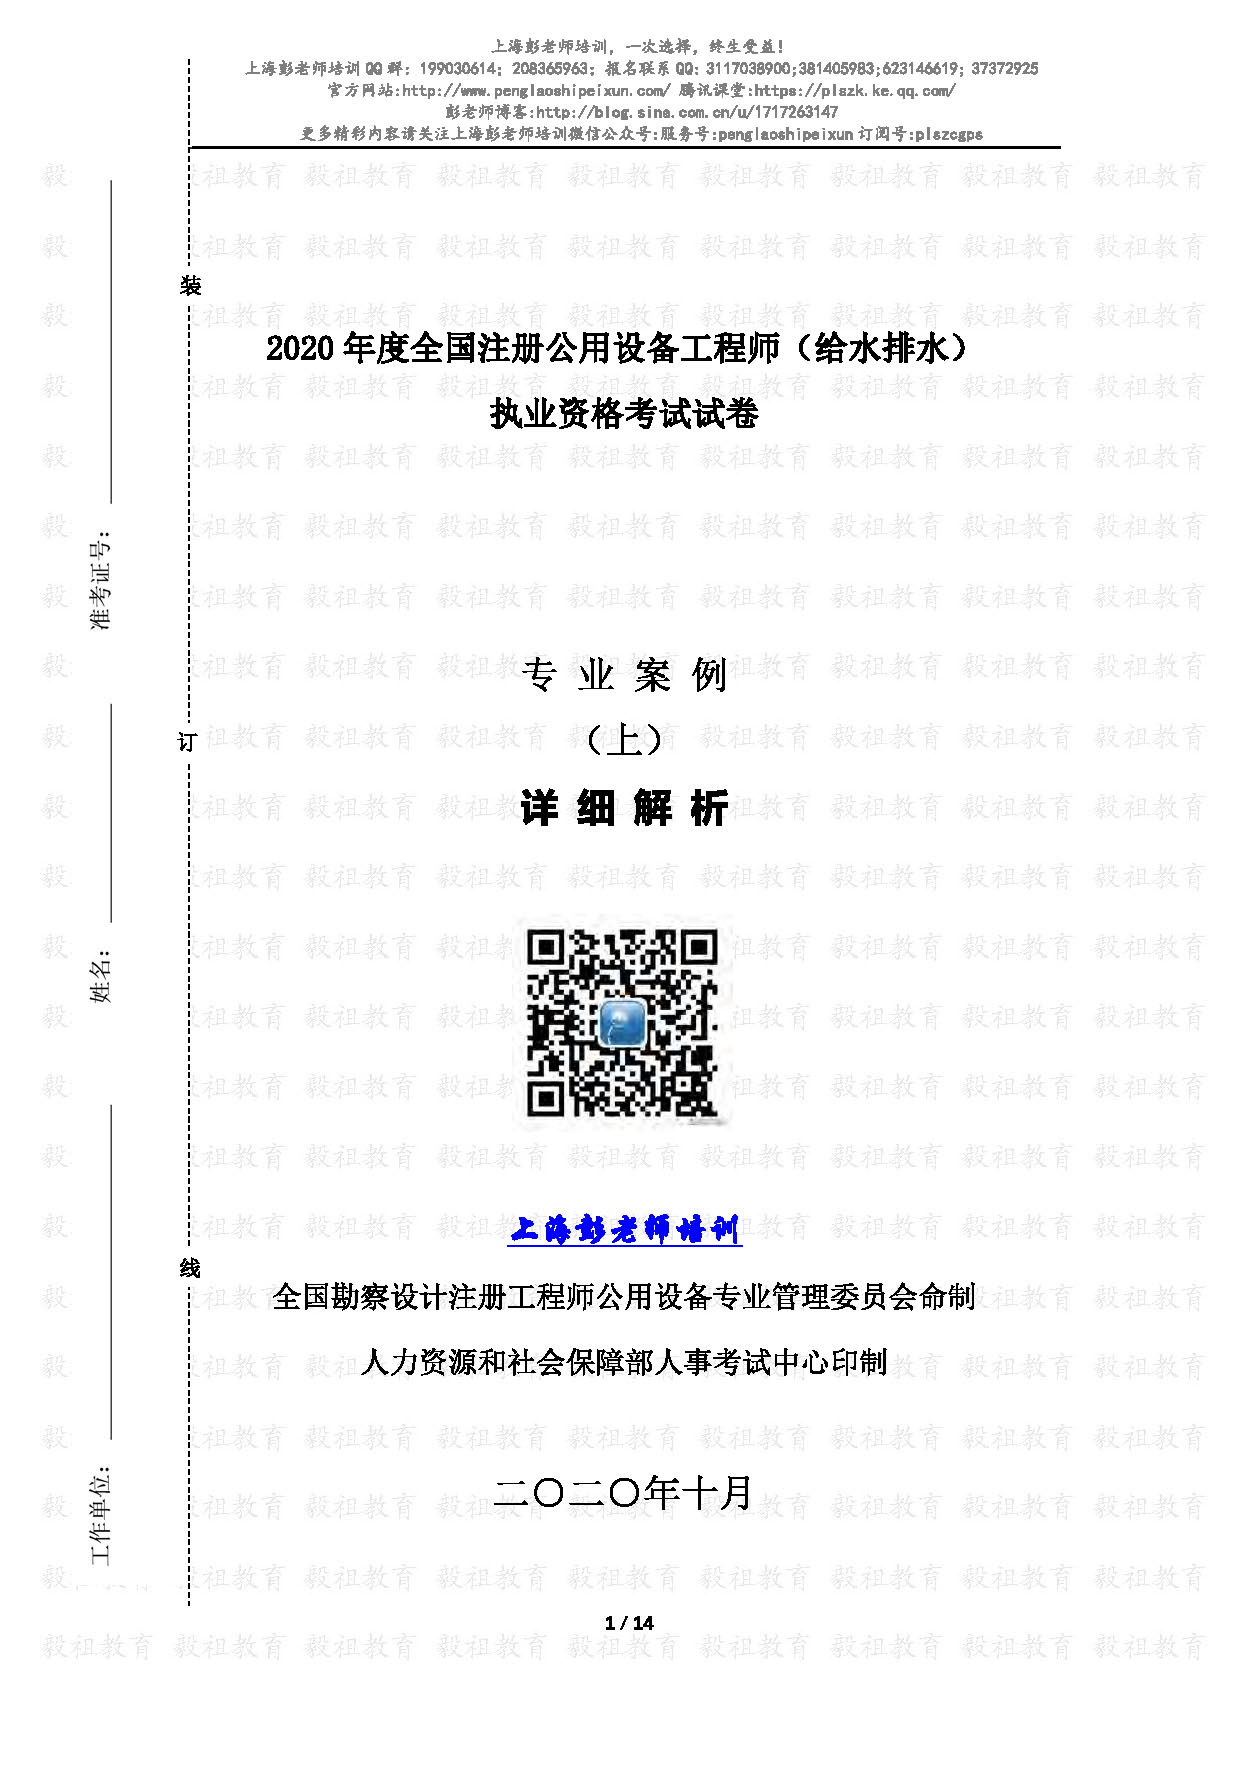 2020注册给排水专业案例真题(上午)详细解析-上海彭老师培训_页面_01.jpg.jpg